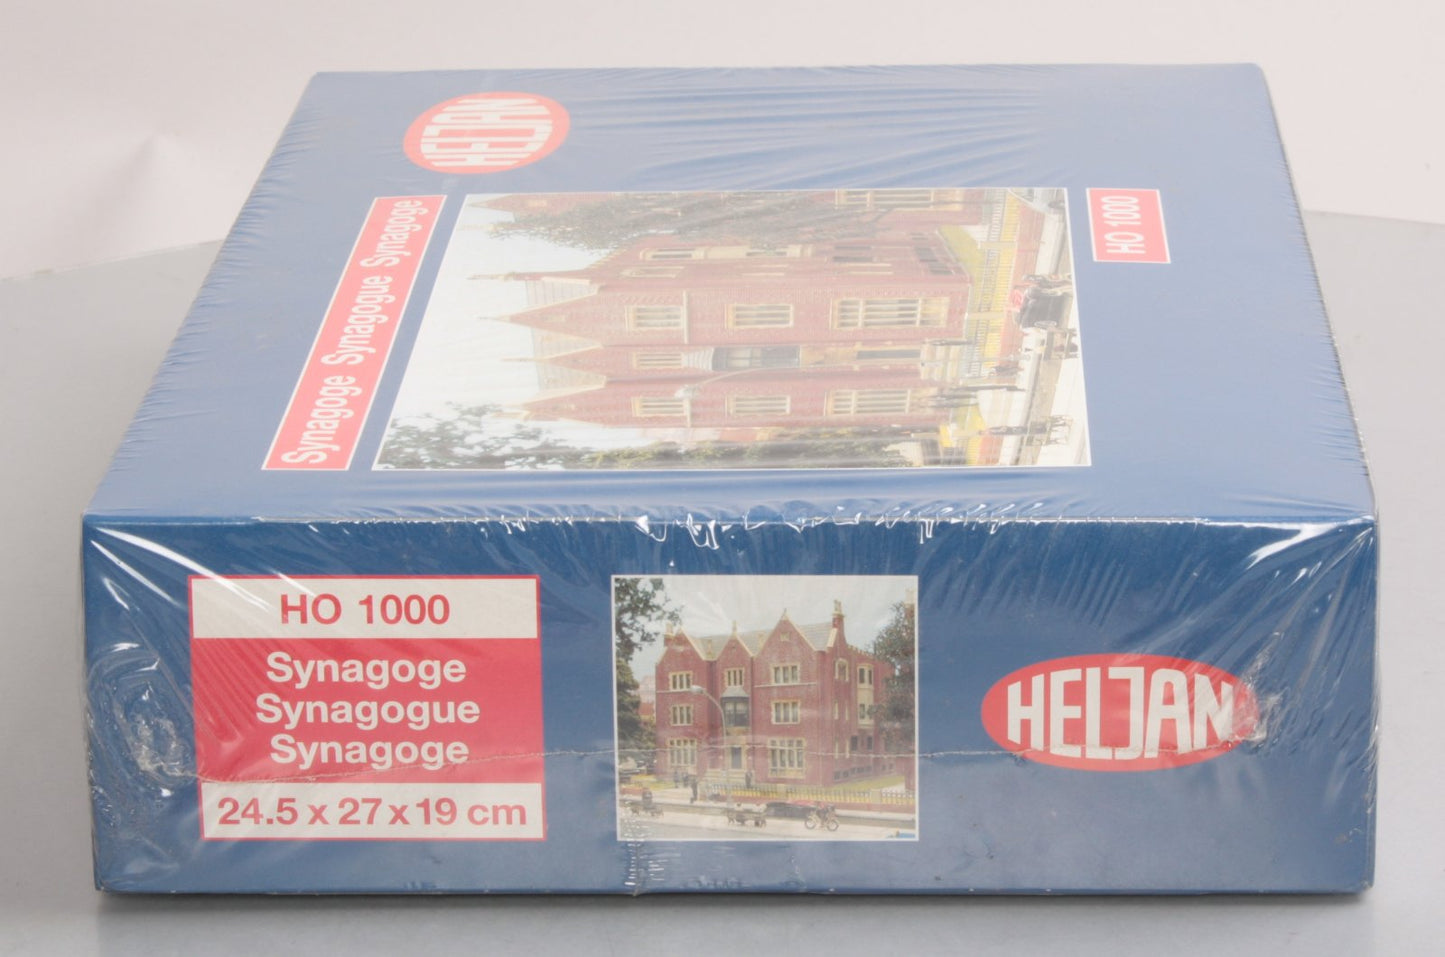 Heljan 1000 HO Scale Synagoge Building Kit